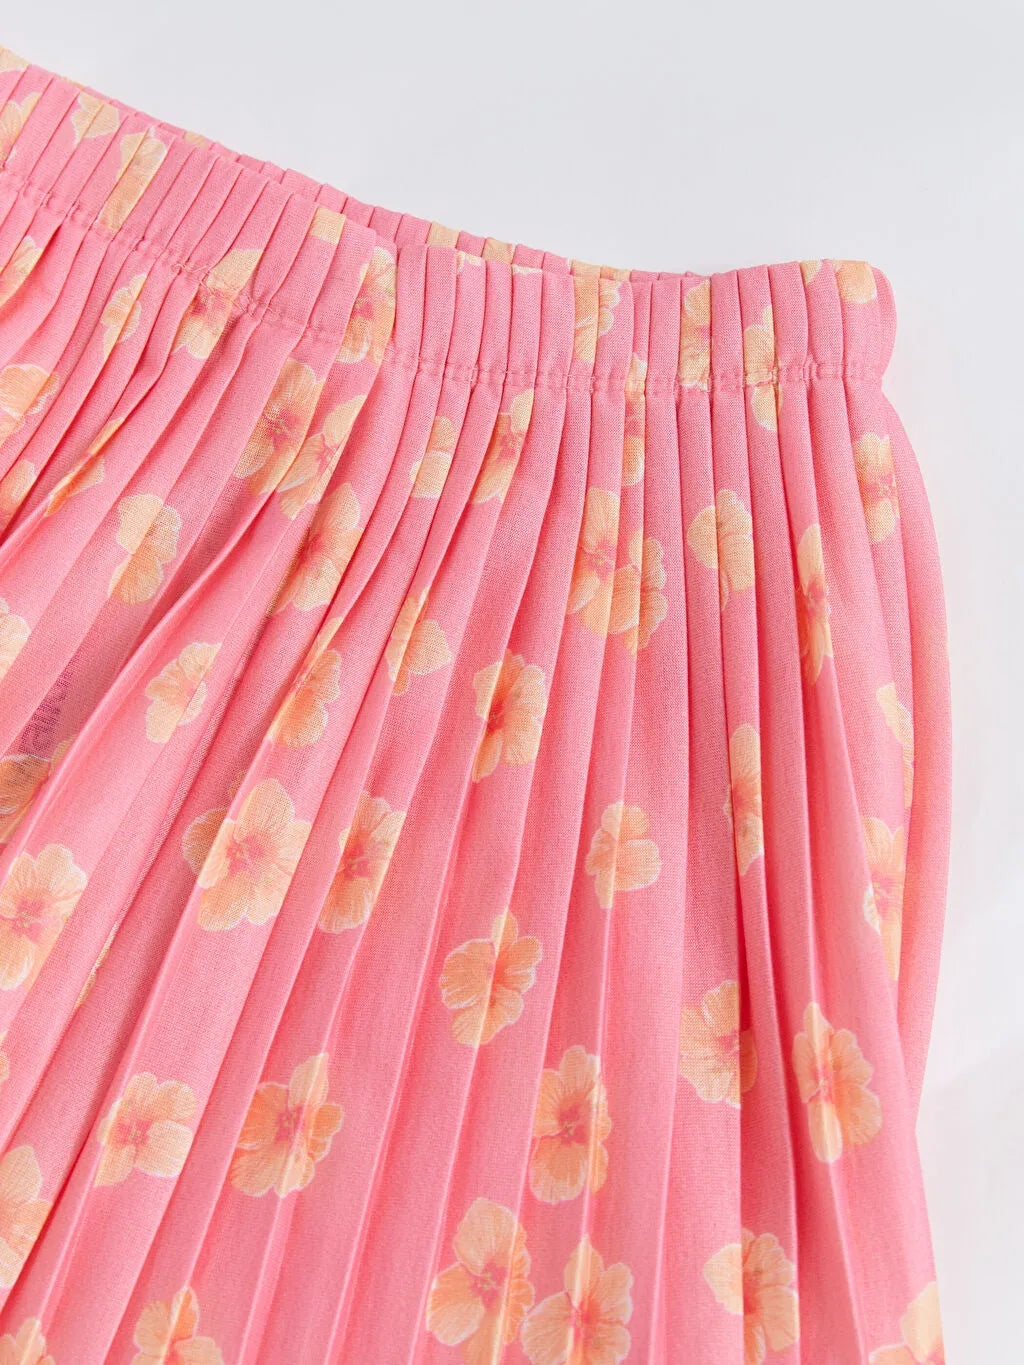 Elastic Waist Patterned Pleated Girl Skirt